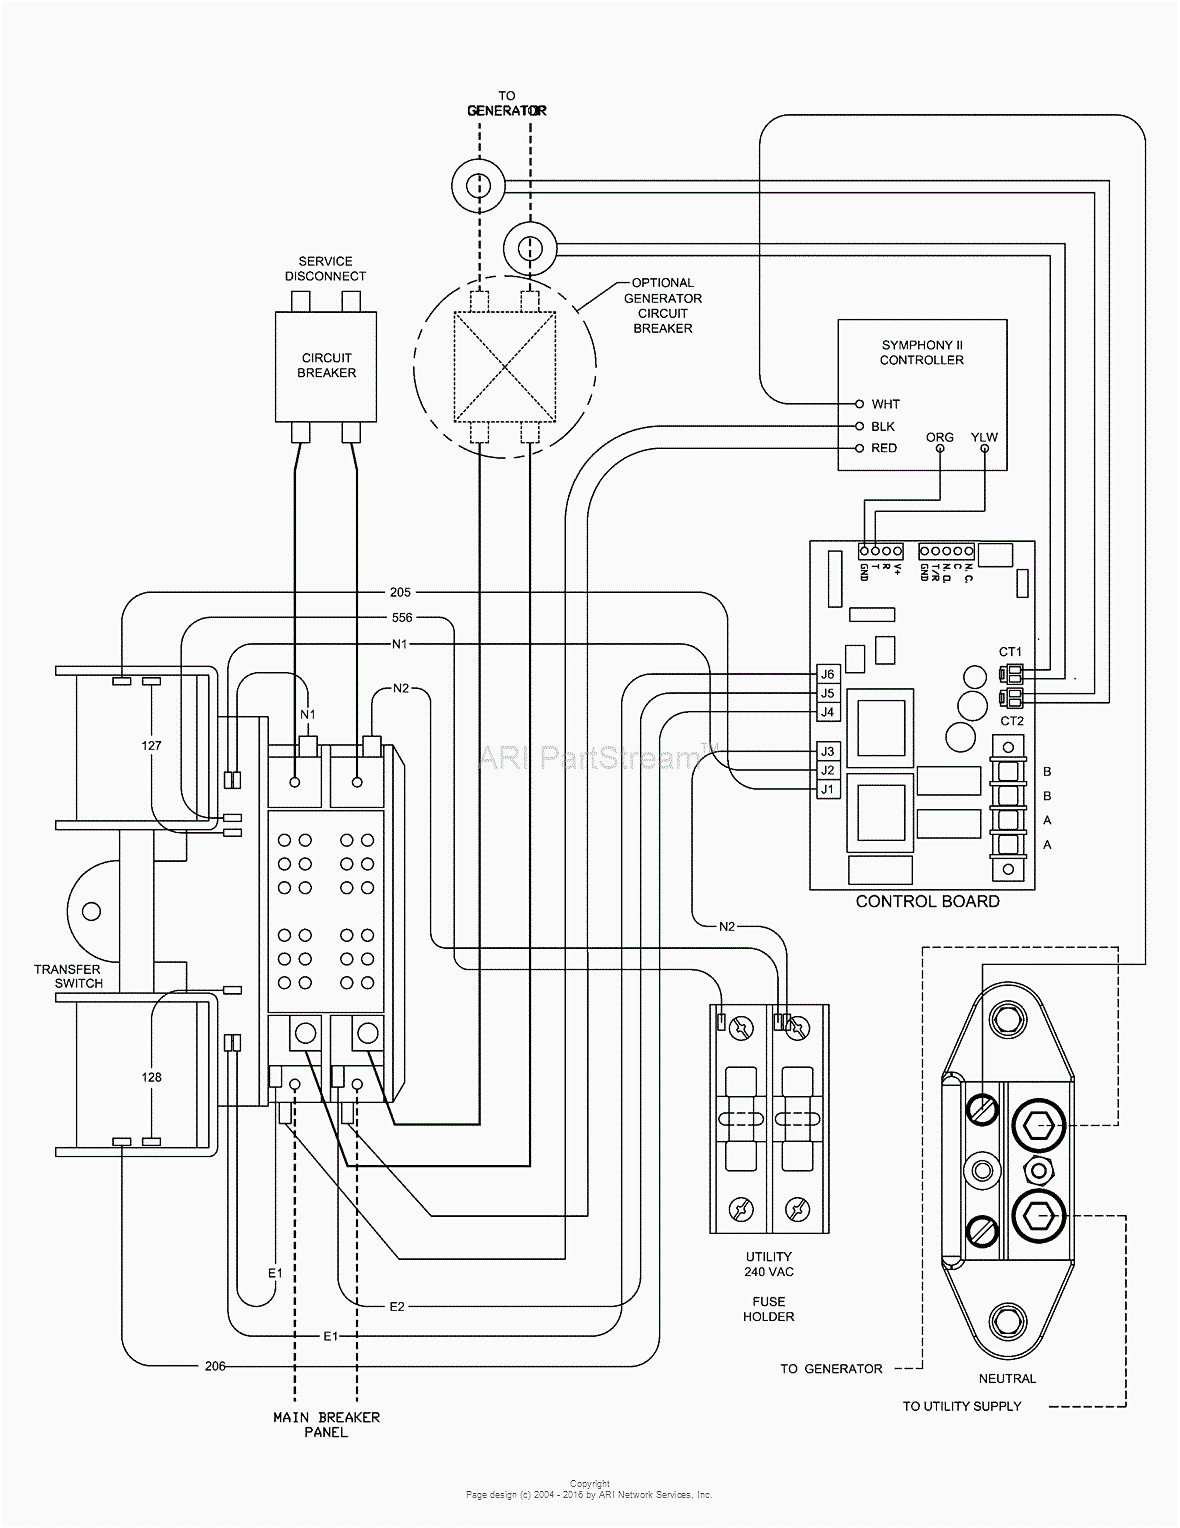 Generac Generator Wiring Diagram Collection Wiring Diagram Sample